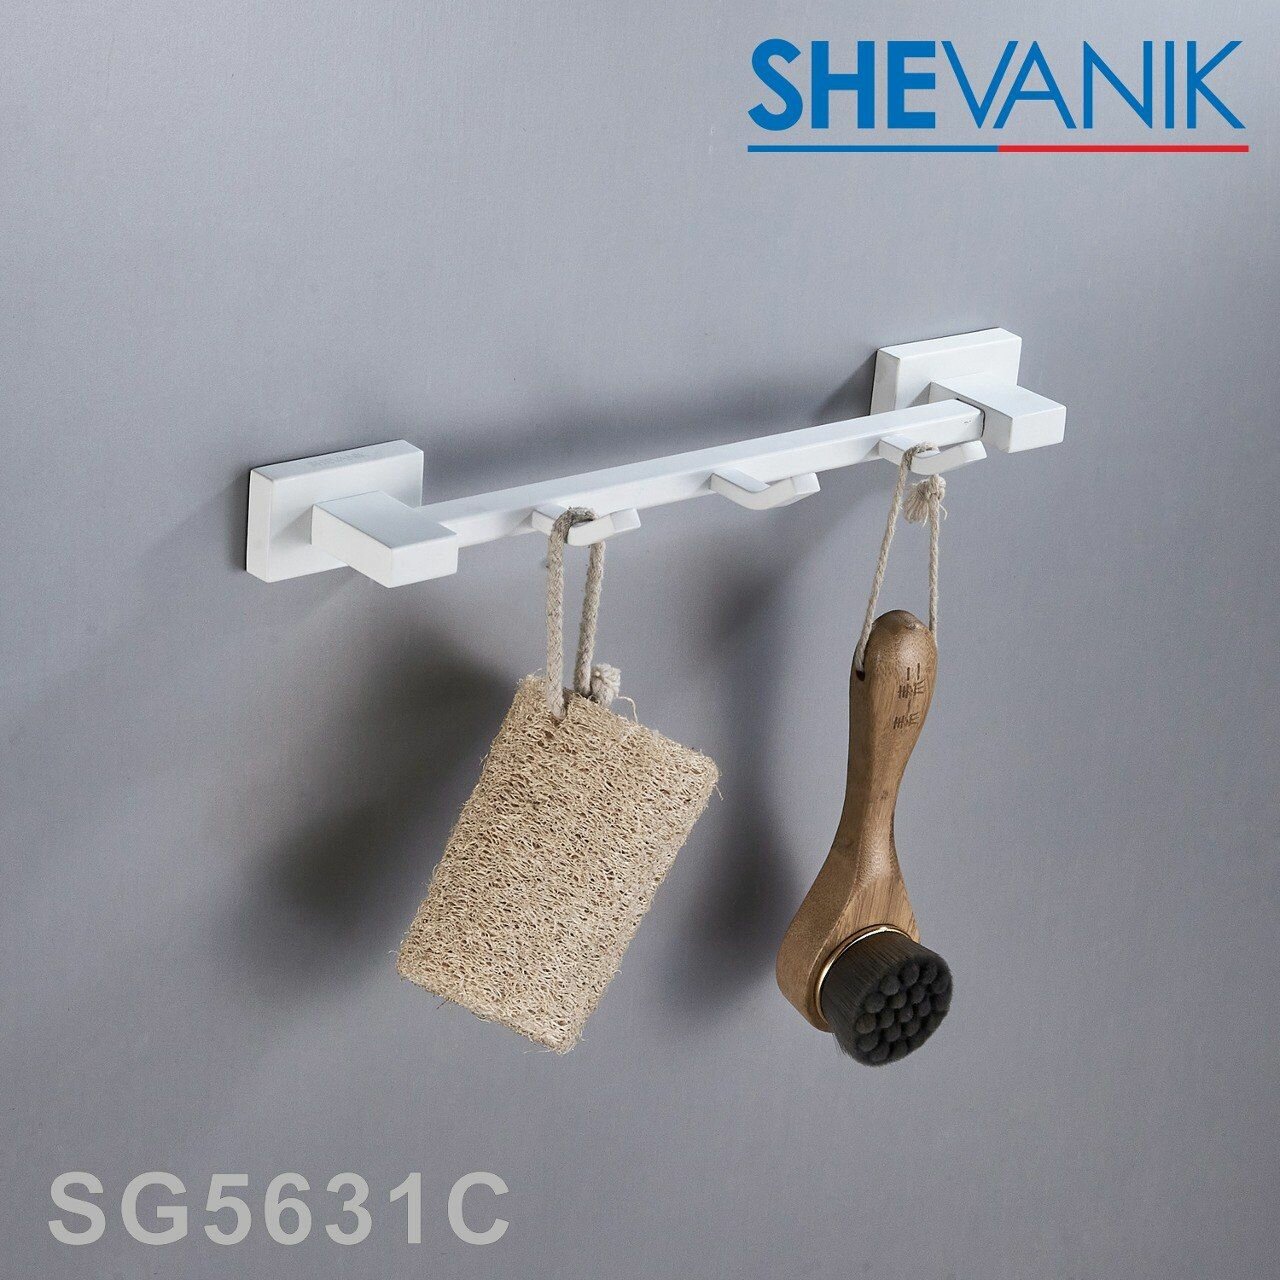 Планка с 3-мя крючками для ванной комнаты SHEVANIK SG5631C цвет белый